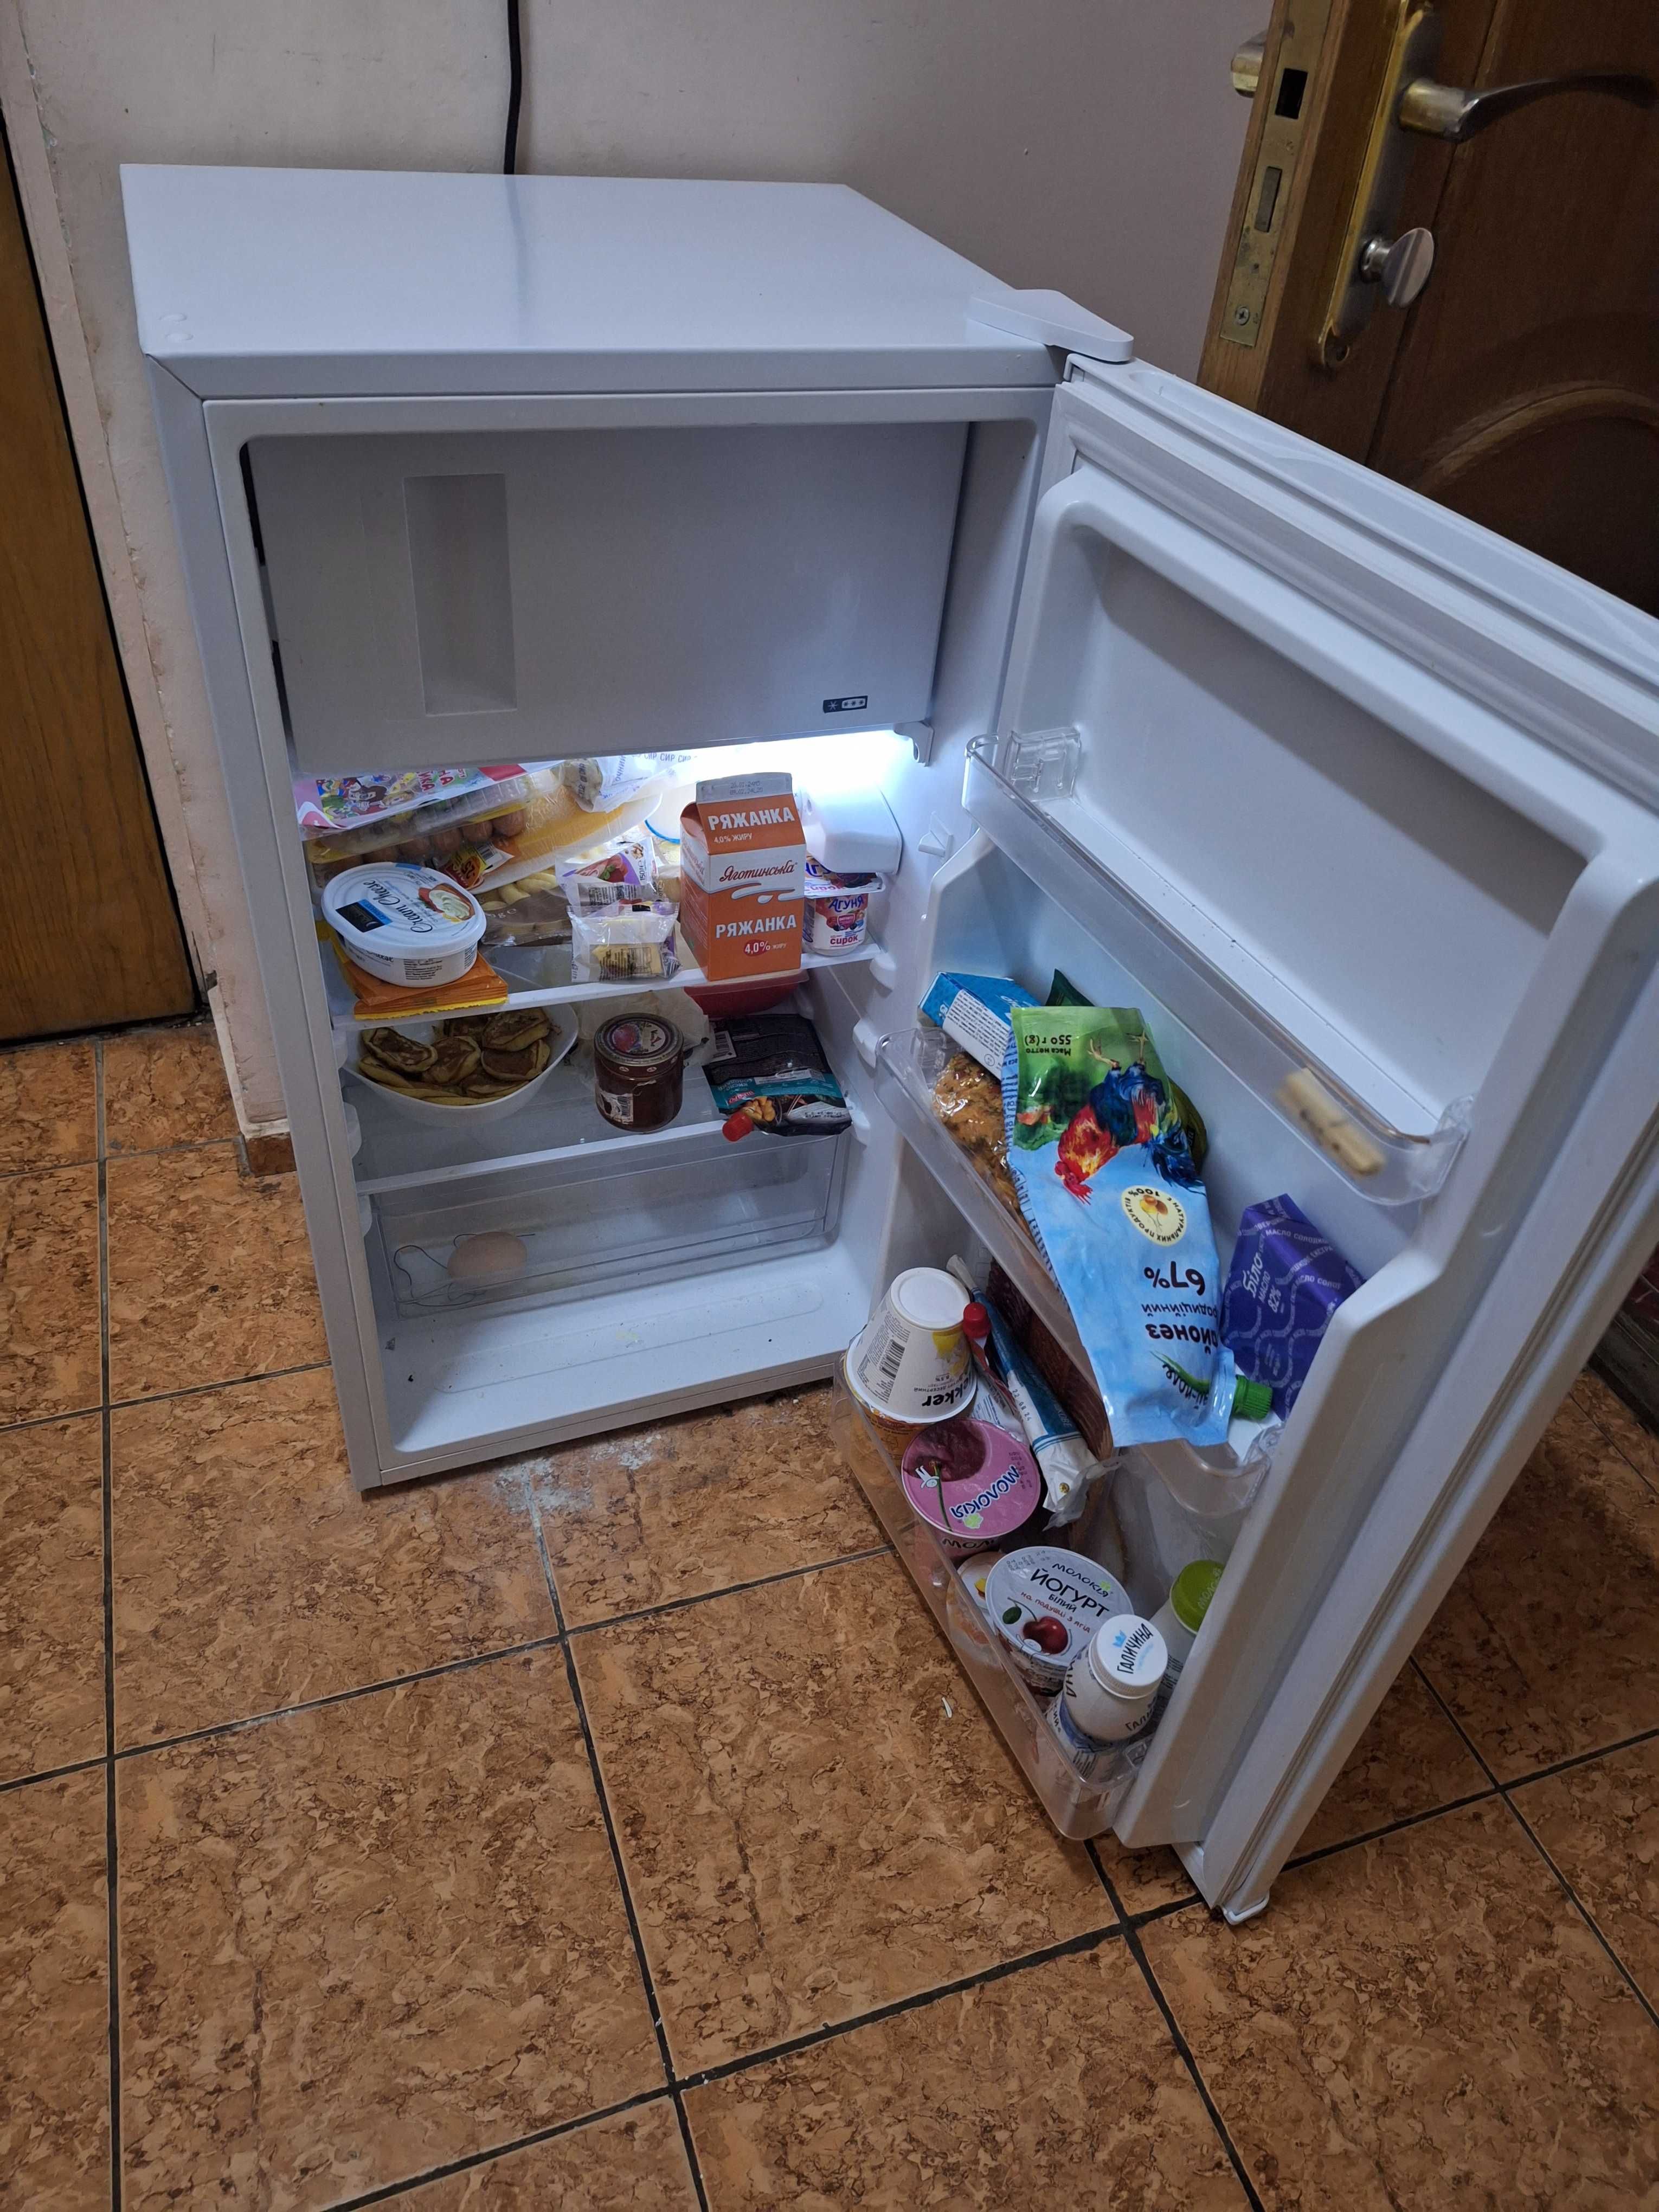 продаю холодильник VIVAX